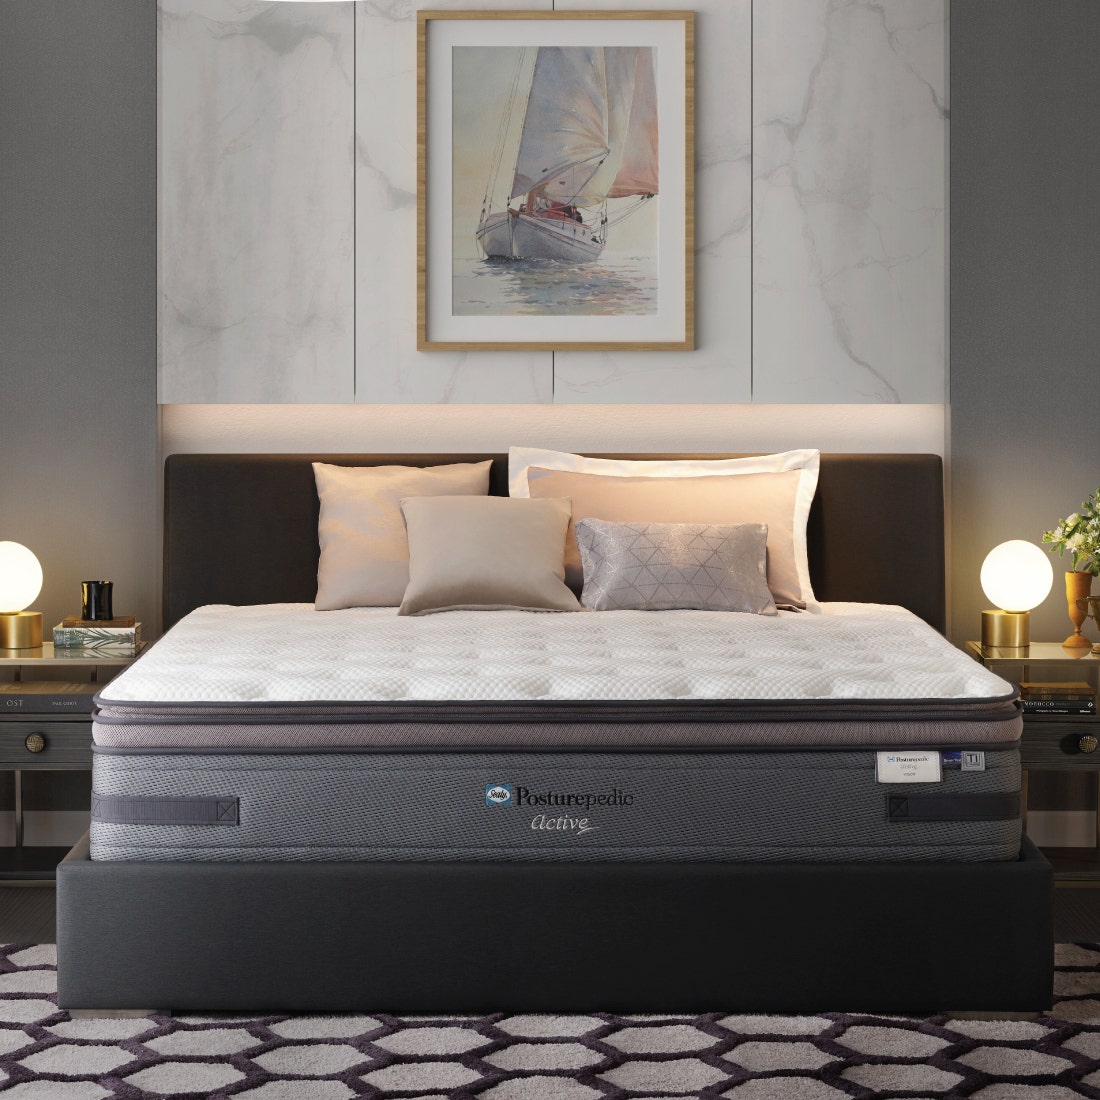 39010638-mattress-bedding-mattresses-spring-mattresses-31